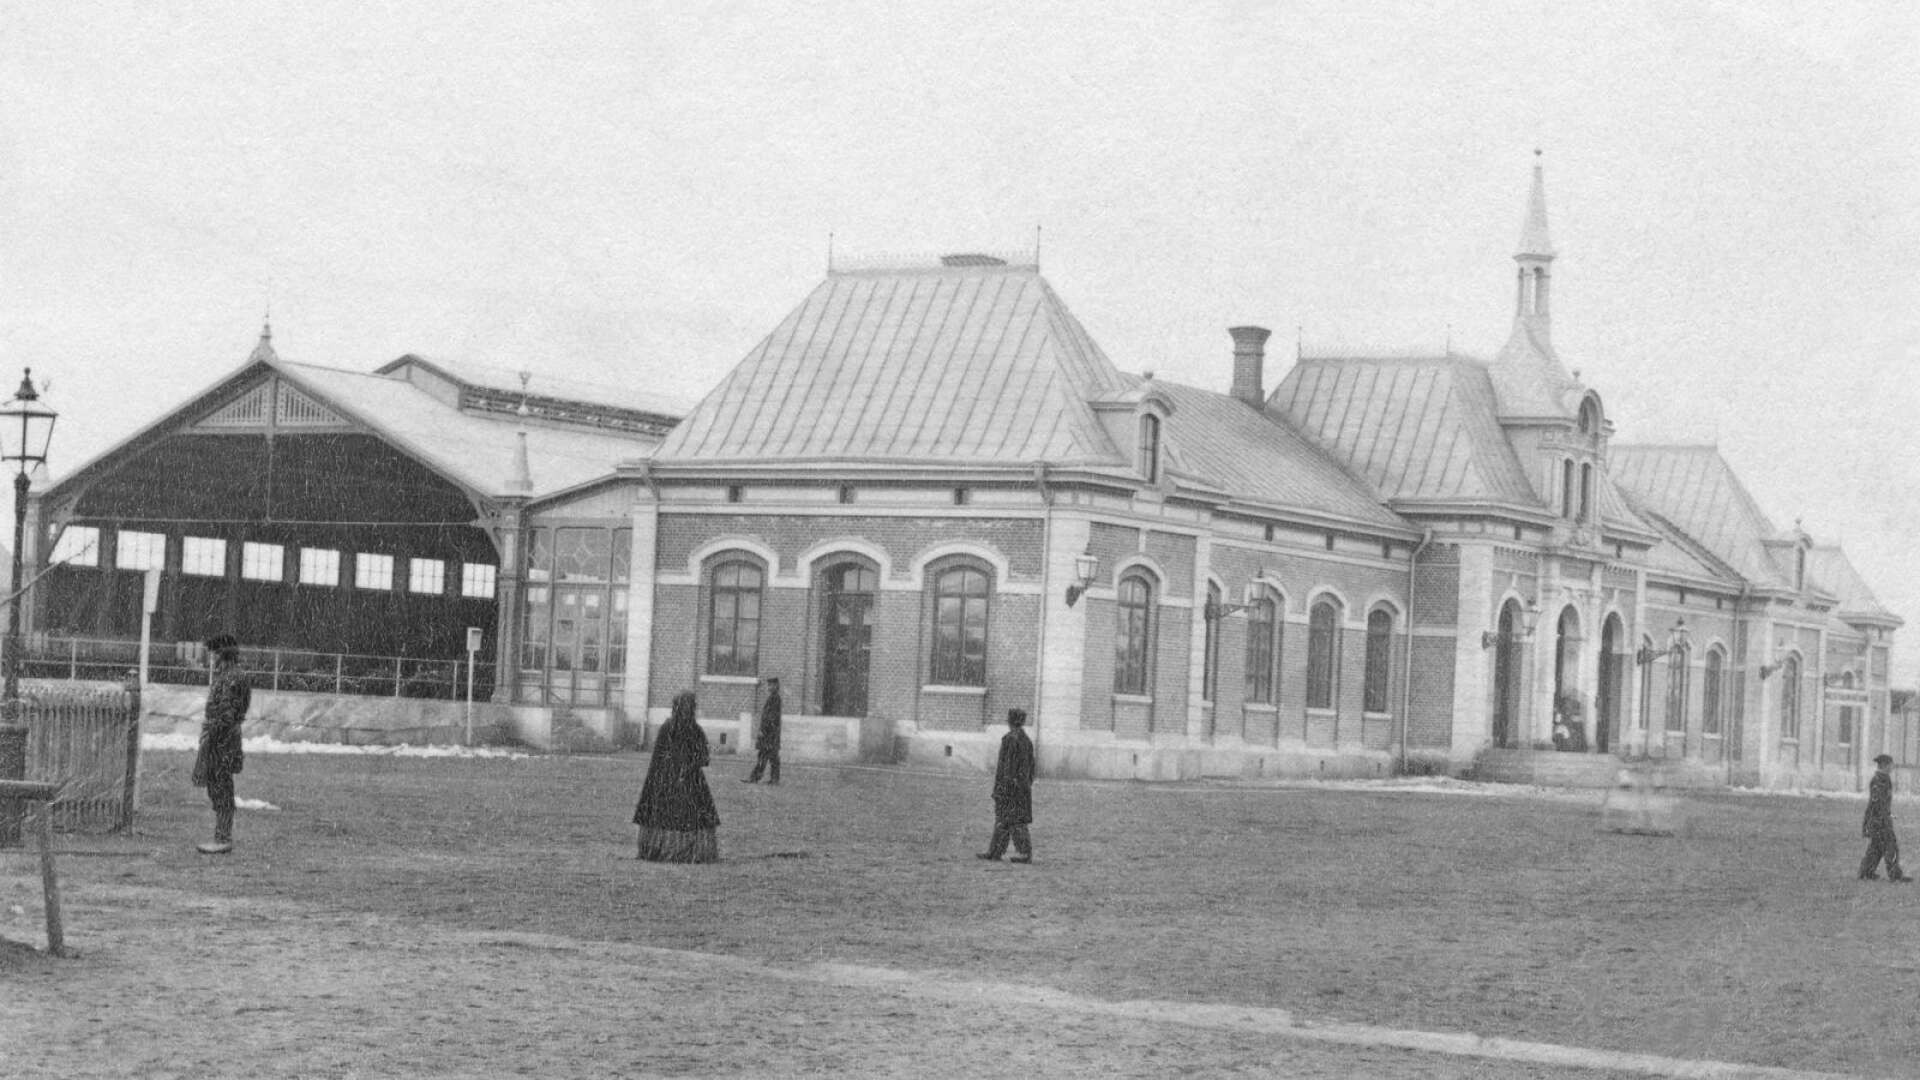 Centralstation på en bild från 1880. Från början fanns det ett stort glastak som täckte fyra spår på baksidan av stationen, det revs dock vid sekelskiftet kring 1900.